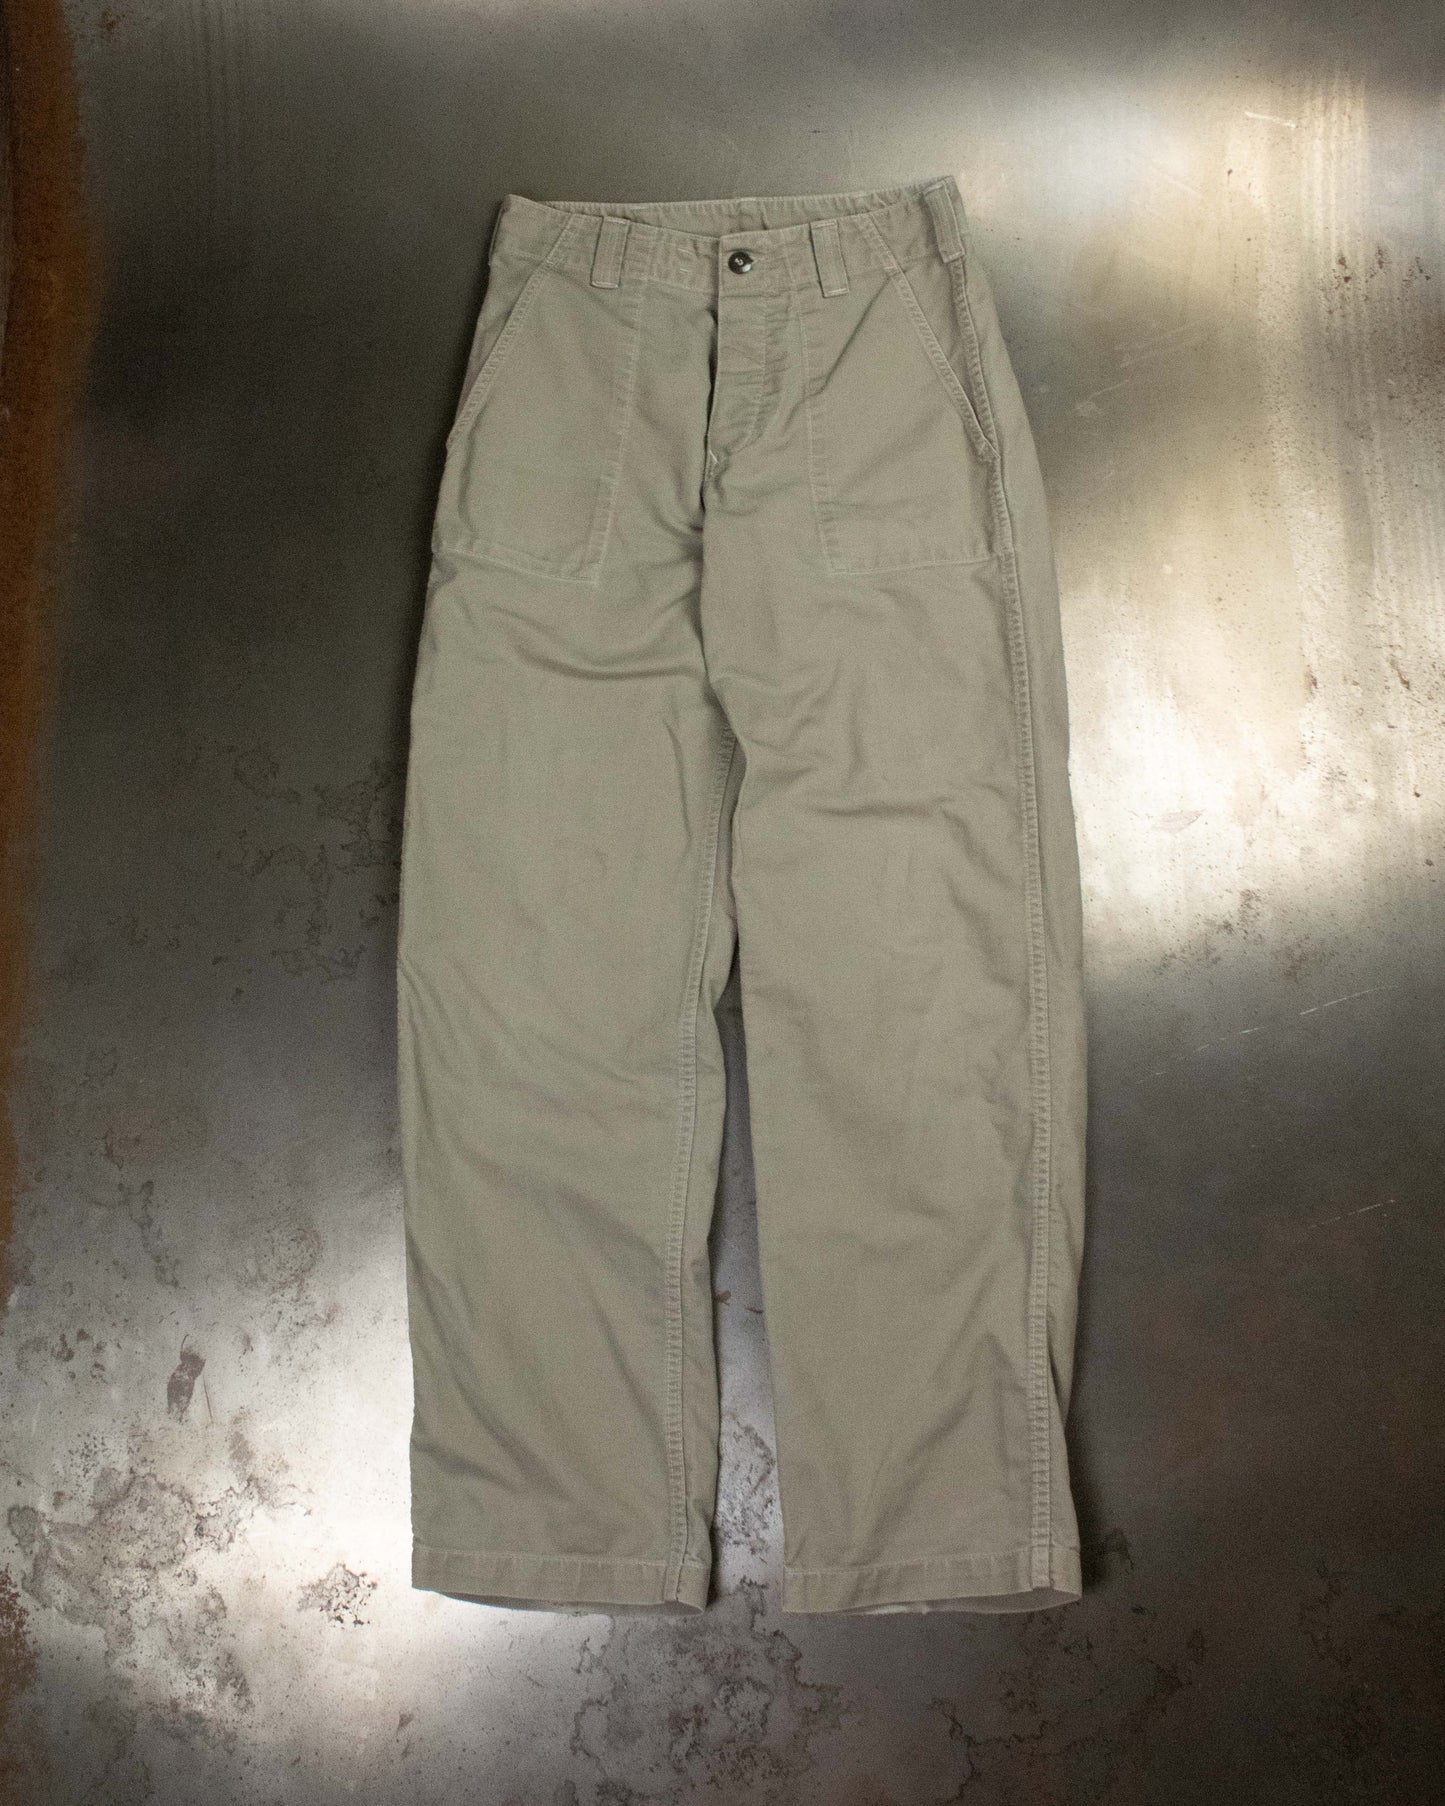 Levi’s All-Duty OG-107 pants